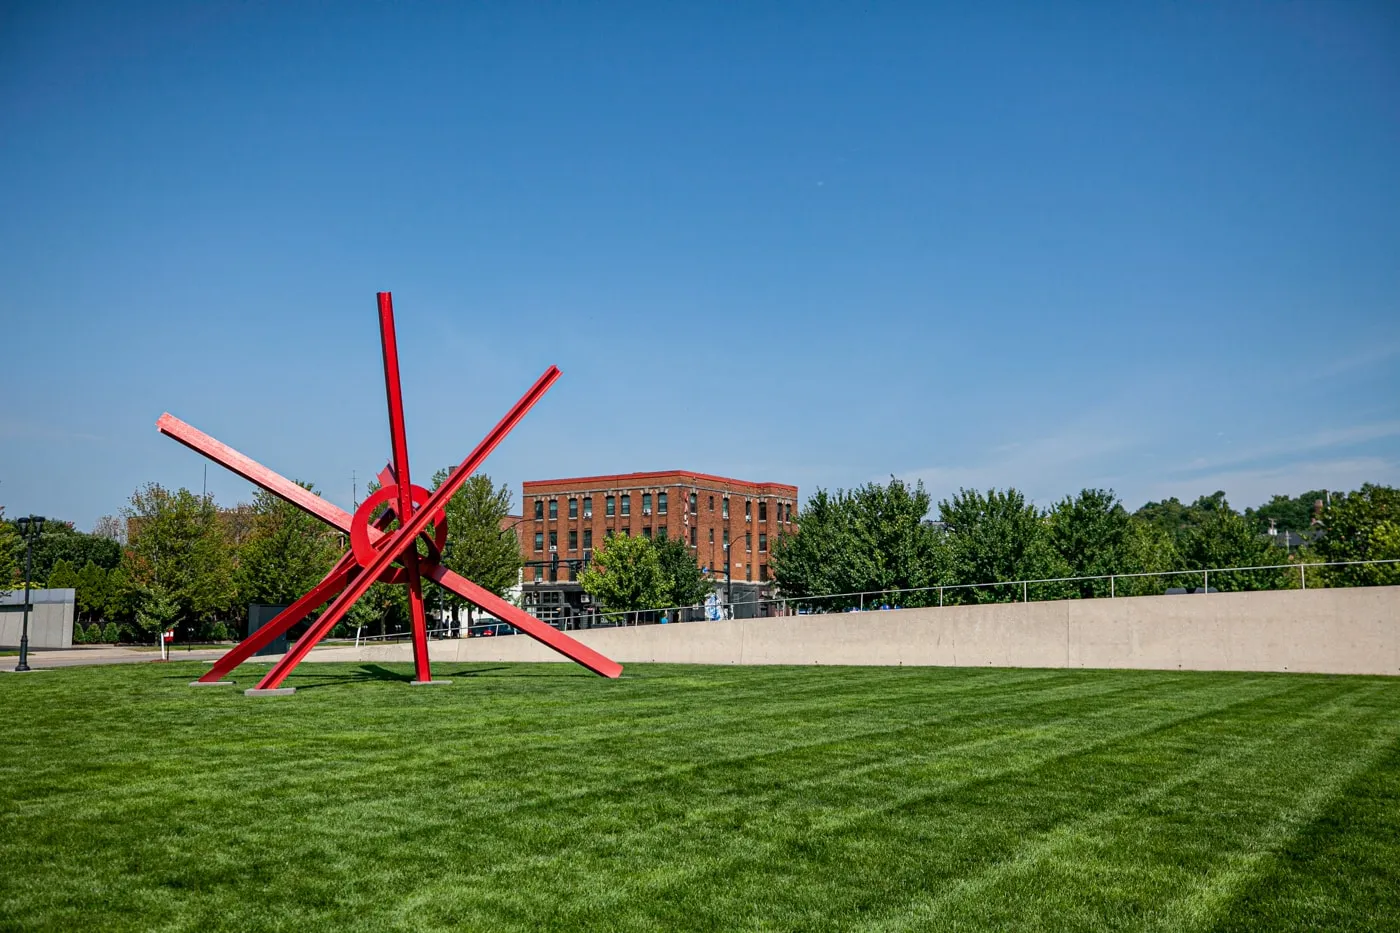 Mark di Suvero T8 | Pappajohn Sculpture Park in Des Moines, Iowa